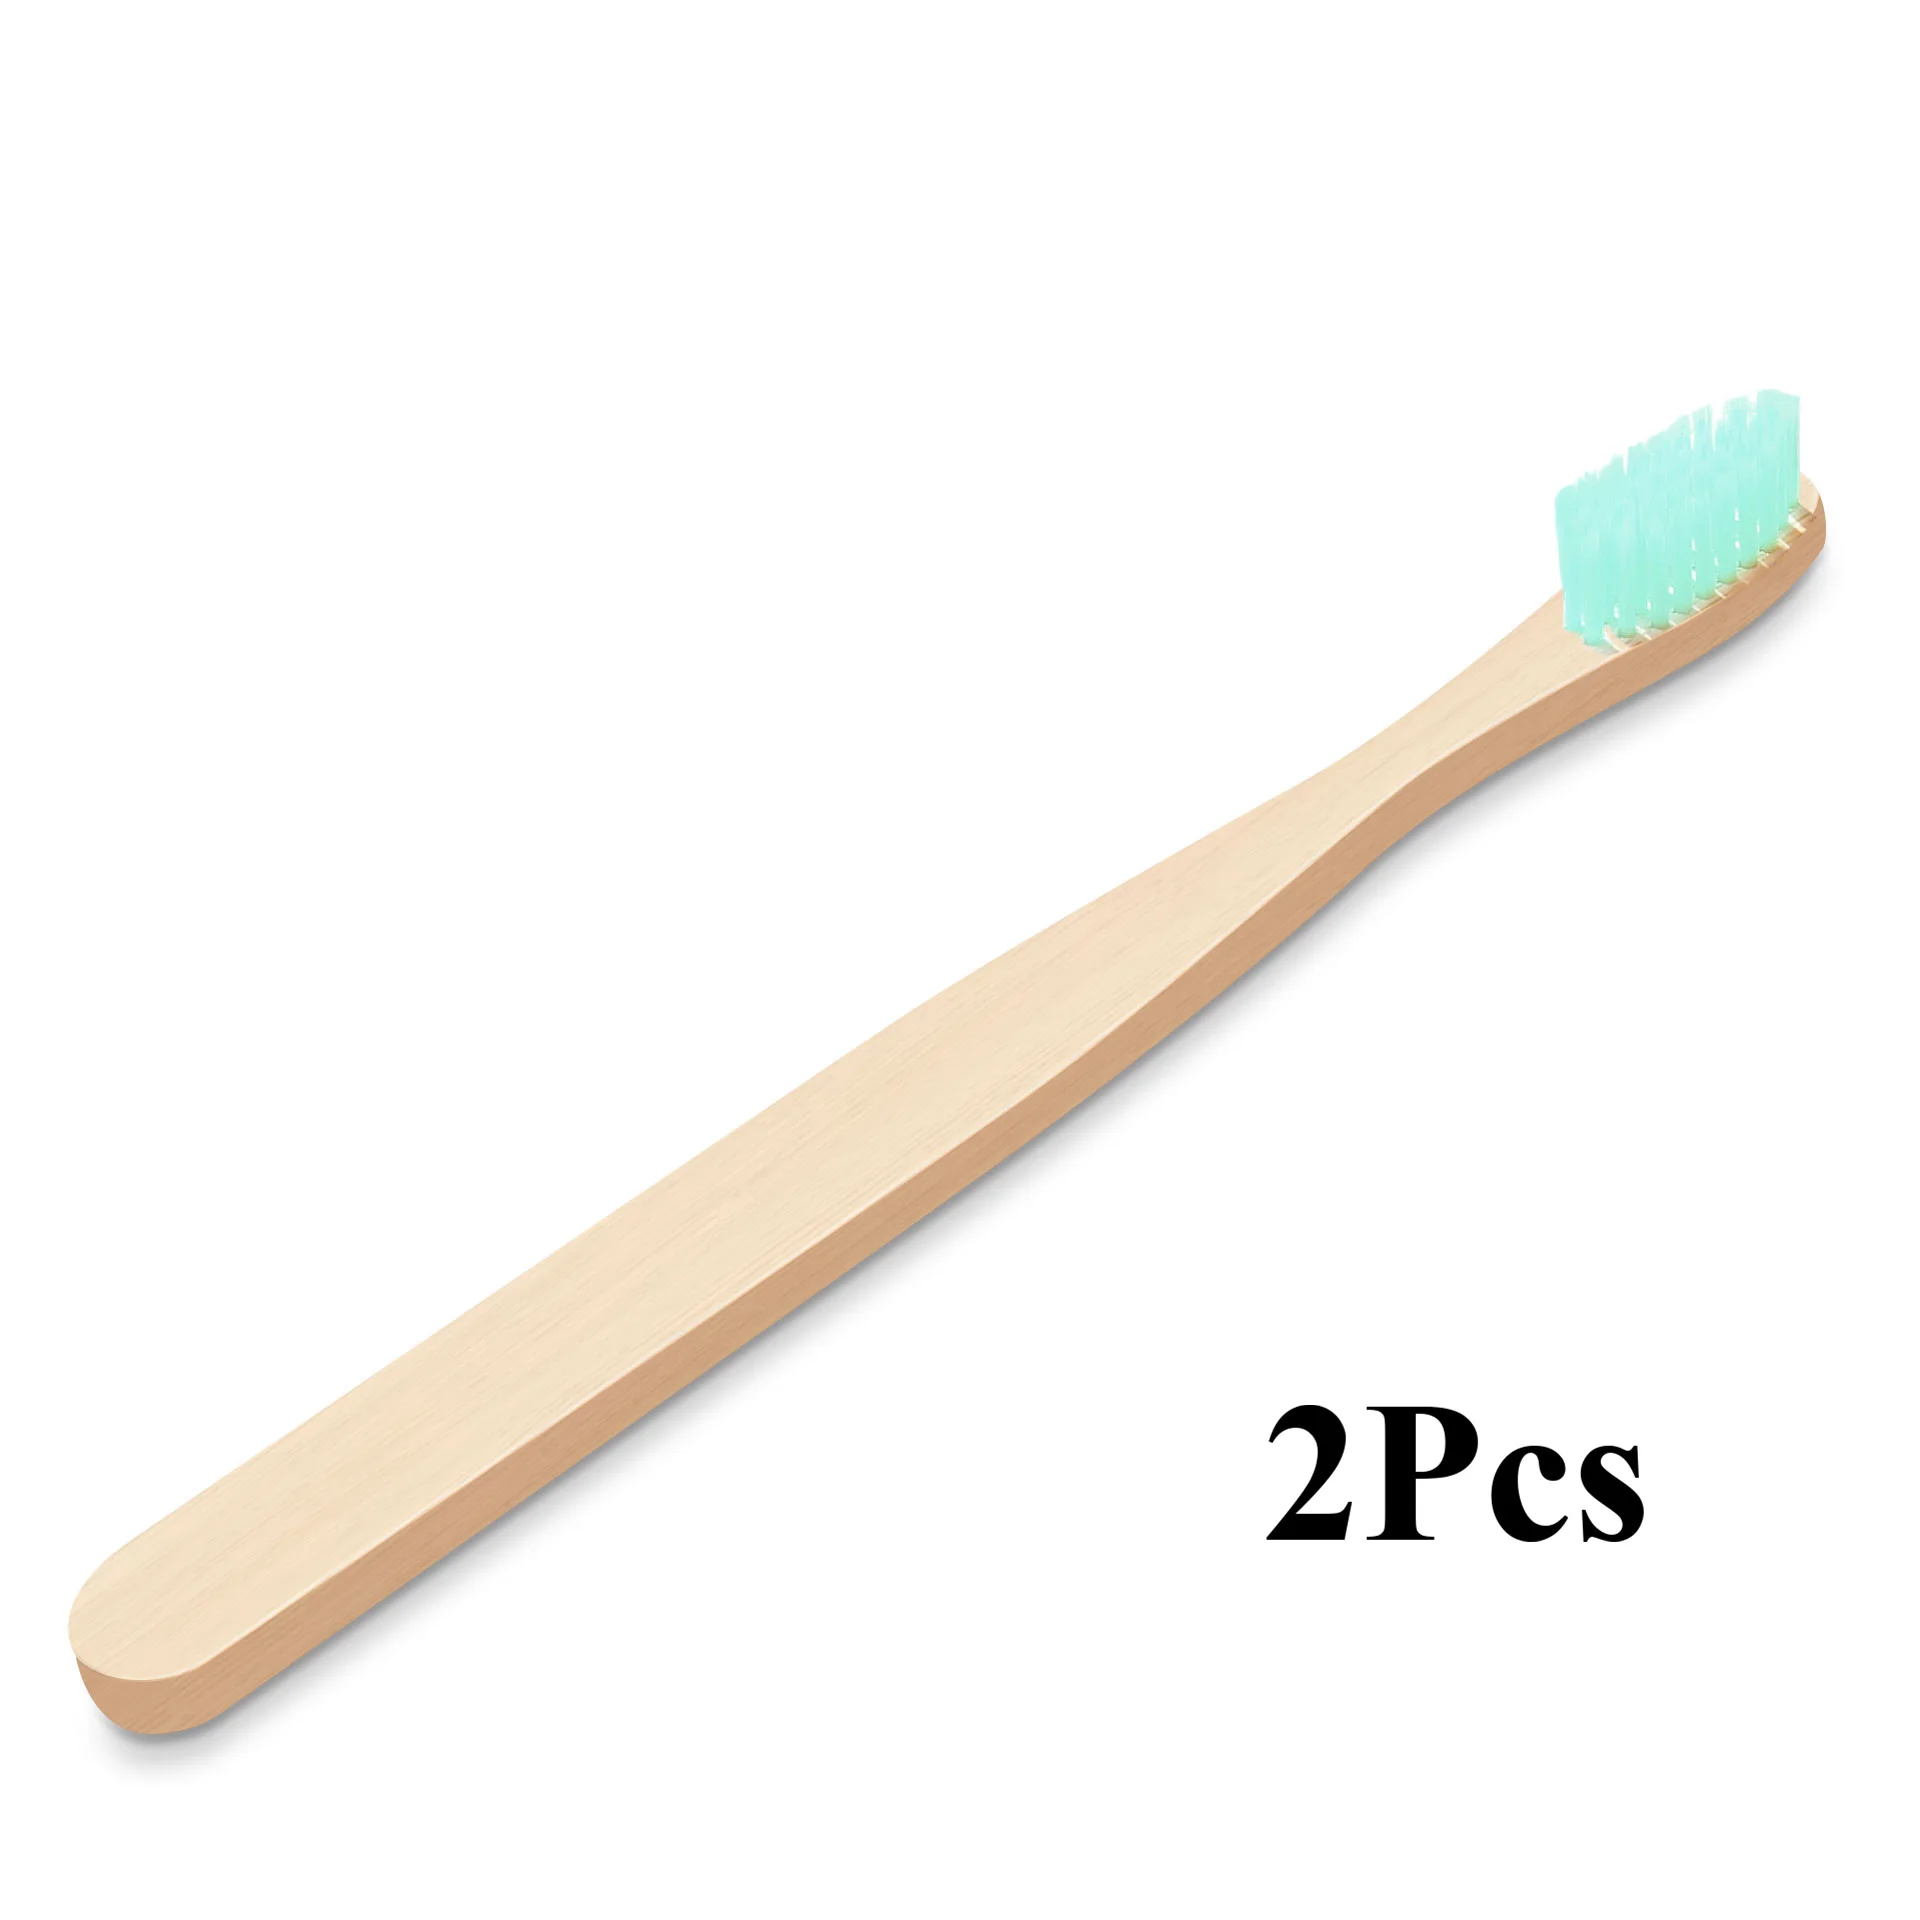 Fulljion бамбуковая зубная щетка, натуральная Экологичная зубная щетка, отбеливание зубов, портативная Мягкая зубная щетка для личного здоровья - Цвет: 2Pcs Green